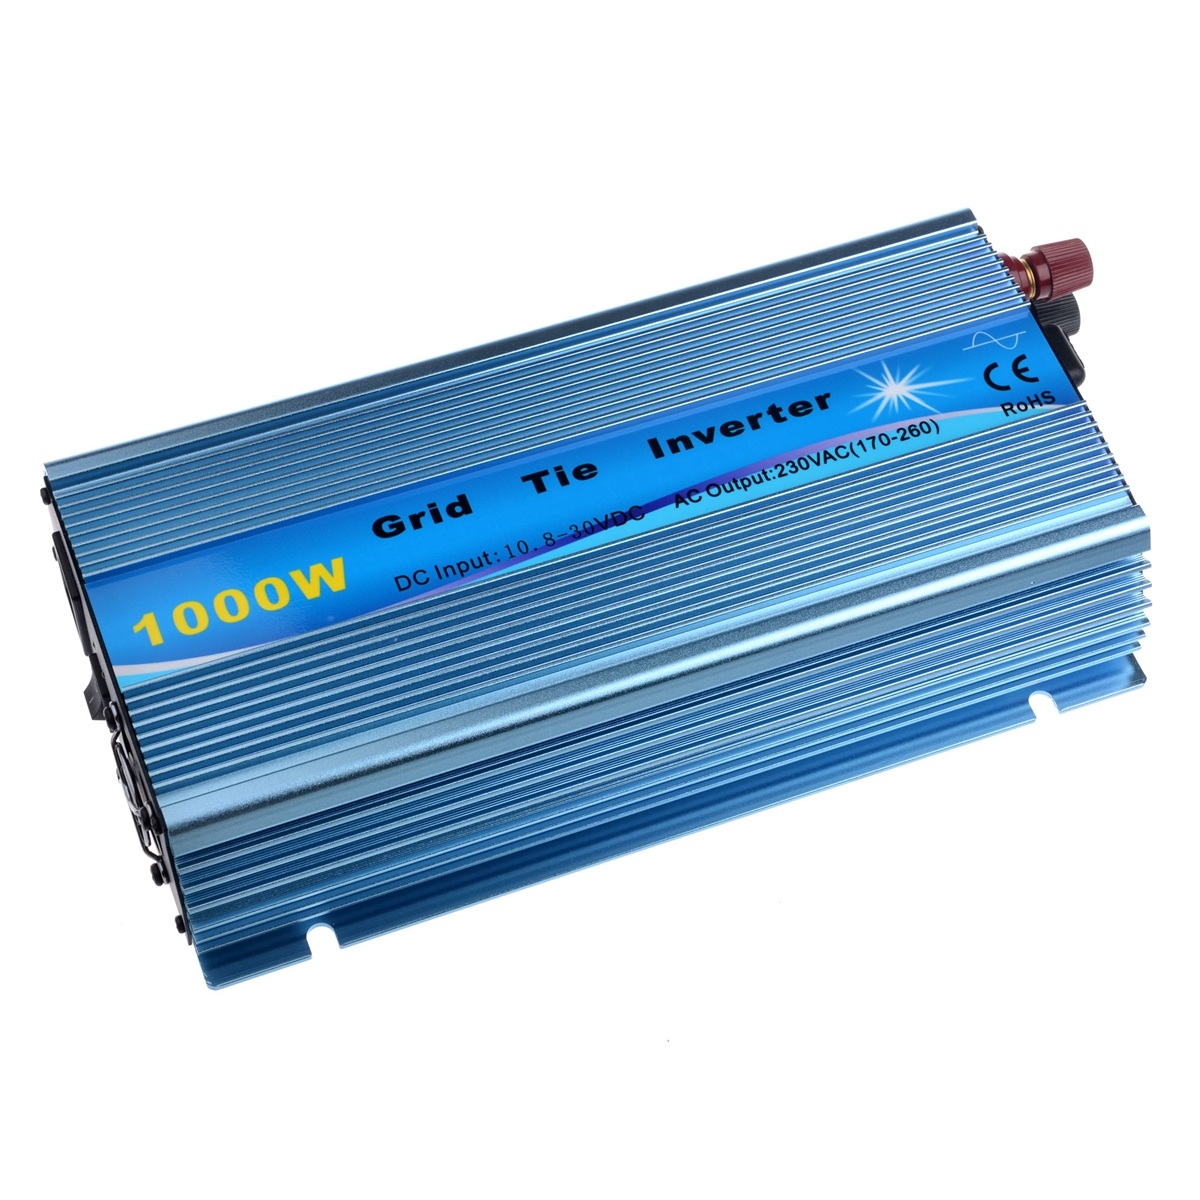 

1000W Solar Grid Tie Inverter DC18V / 22V-60V to AC110V/220V MPPT Pure Sine Wave Inverter 50Hz/60Hz